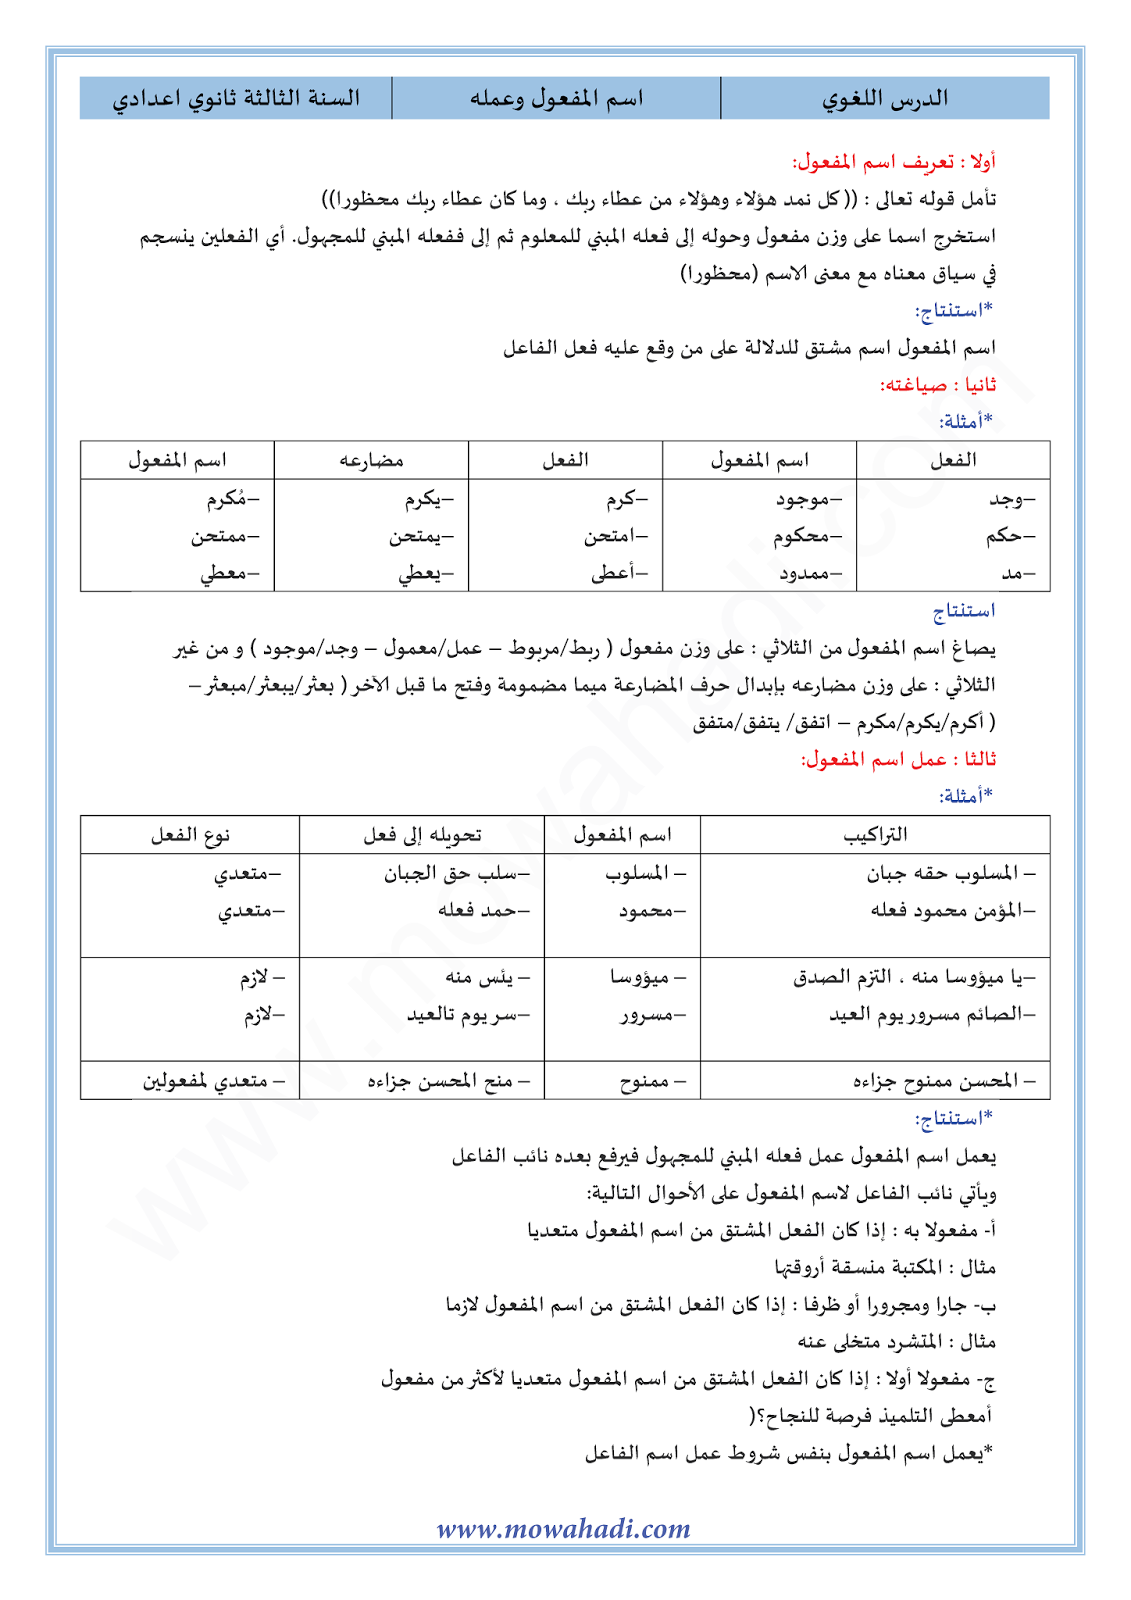 الدرس اللغوي اسم المفعول و عمله للسنة الثالثة اعدادي في مادة اللغة العربية 2-cours-dars-loghawi3_001